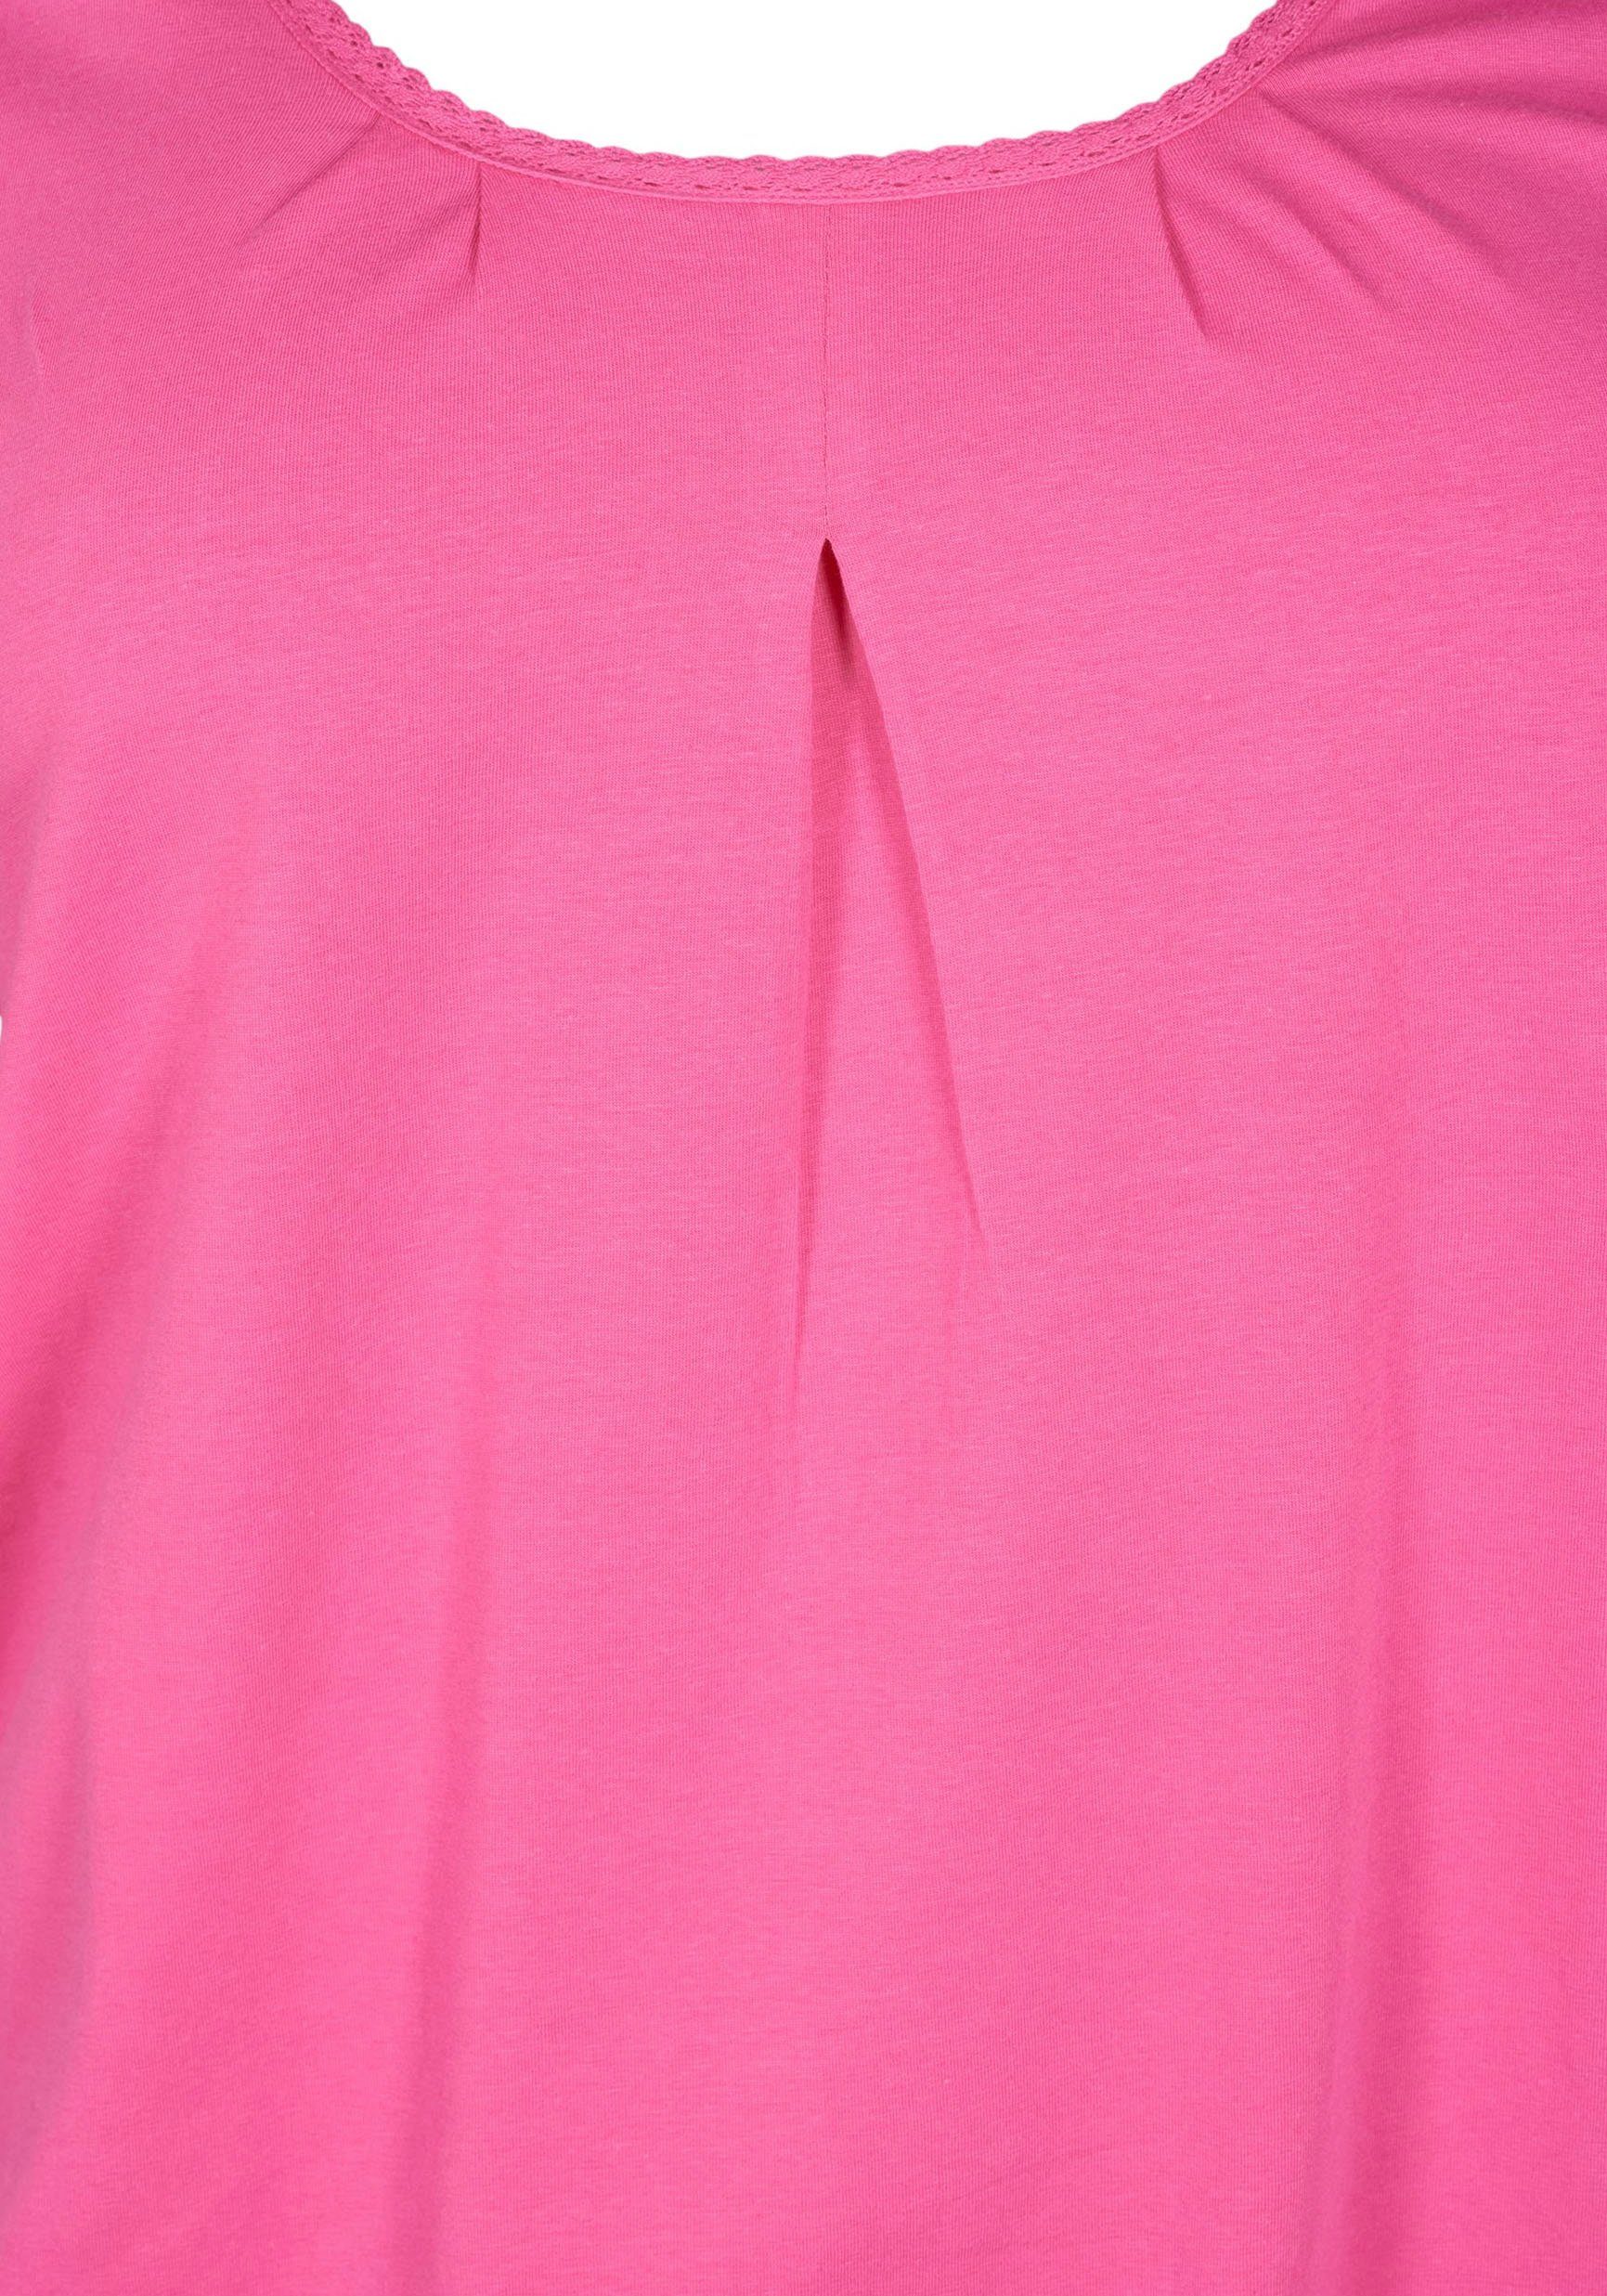 VPOLLY Shocking Zizzi T-Shirt Zizzi Pink